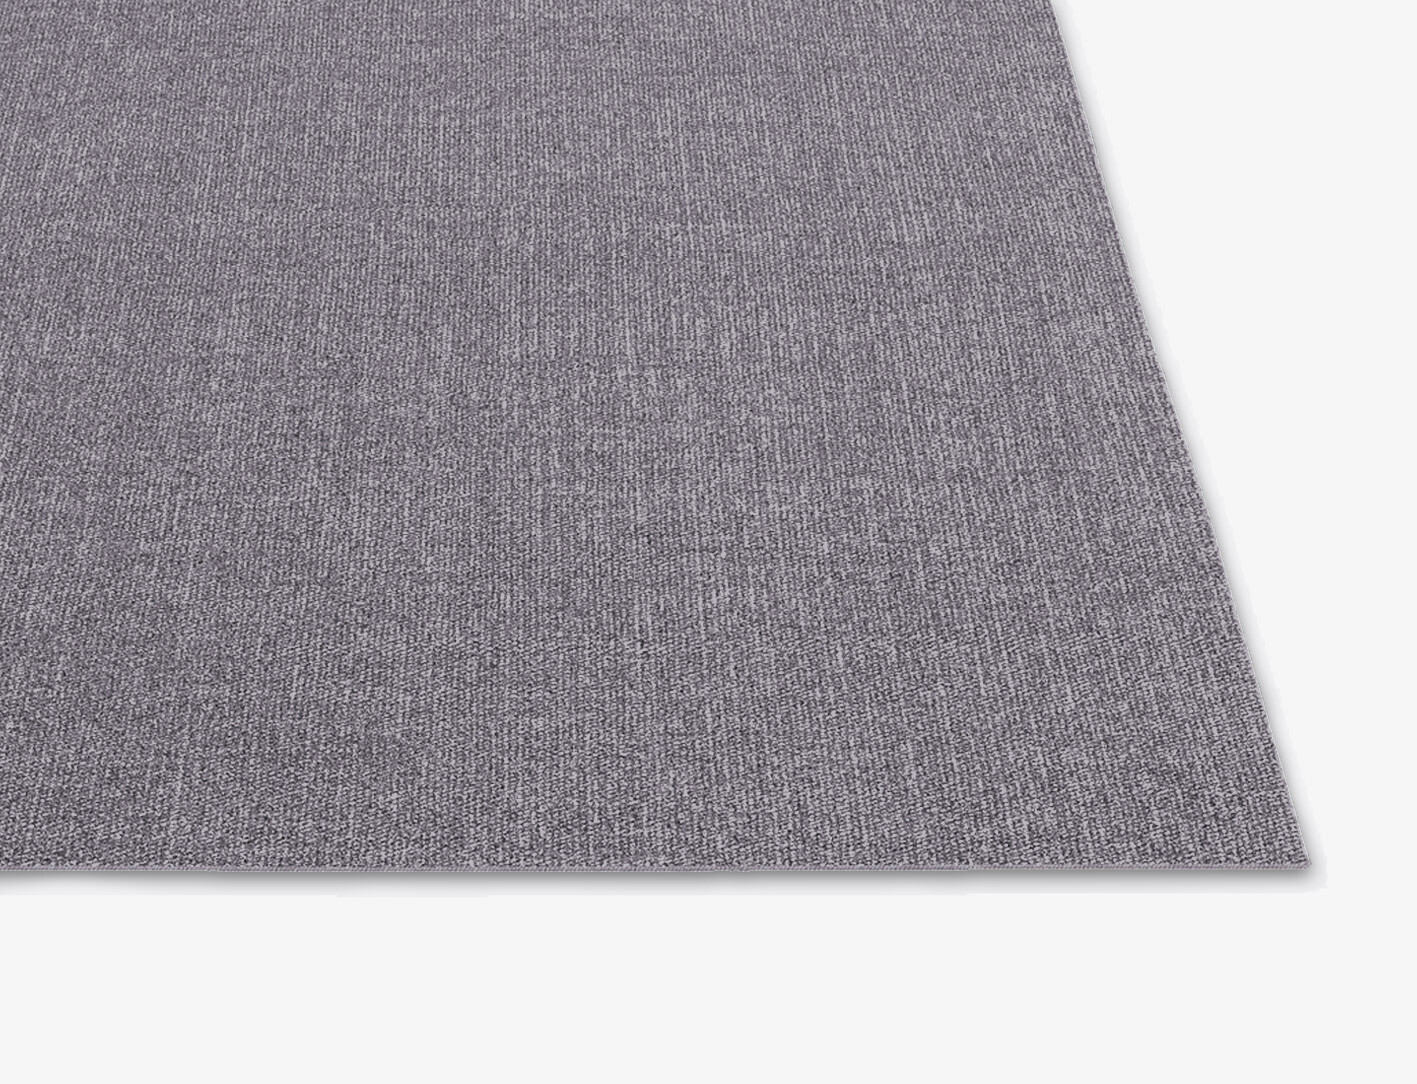 RA-EL10 Solid Colors Square Flatweave New Zealand Wool Custom Rug by Rug Artisan